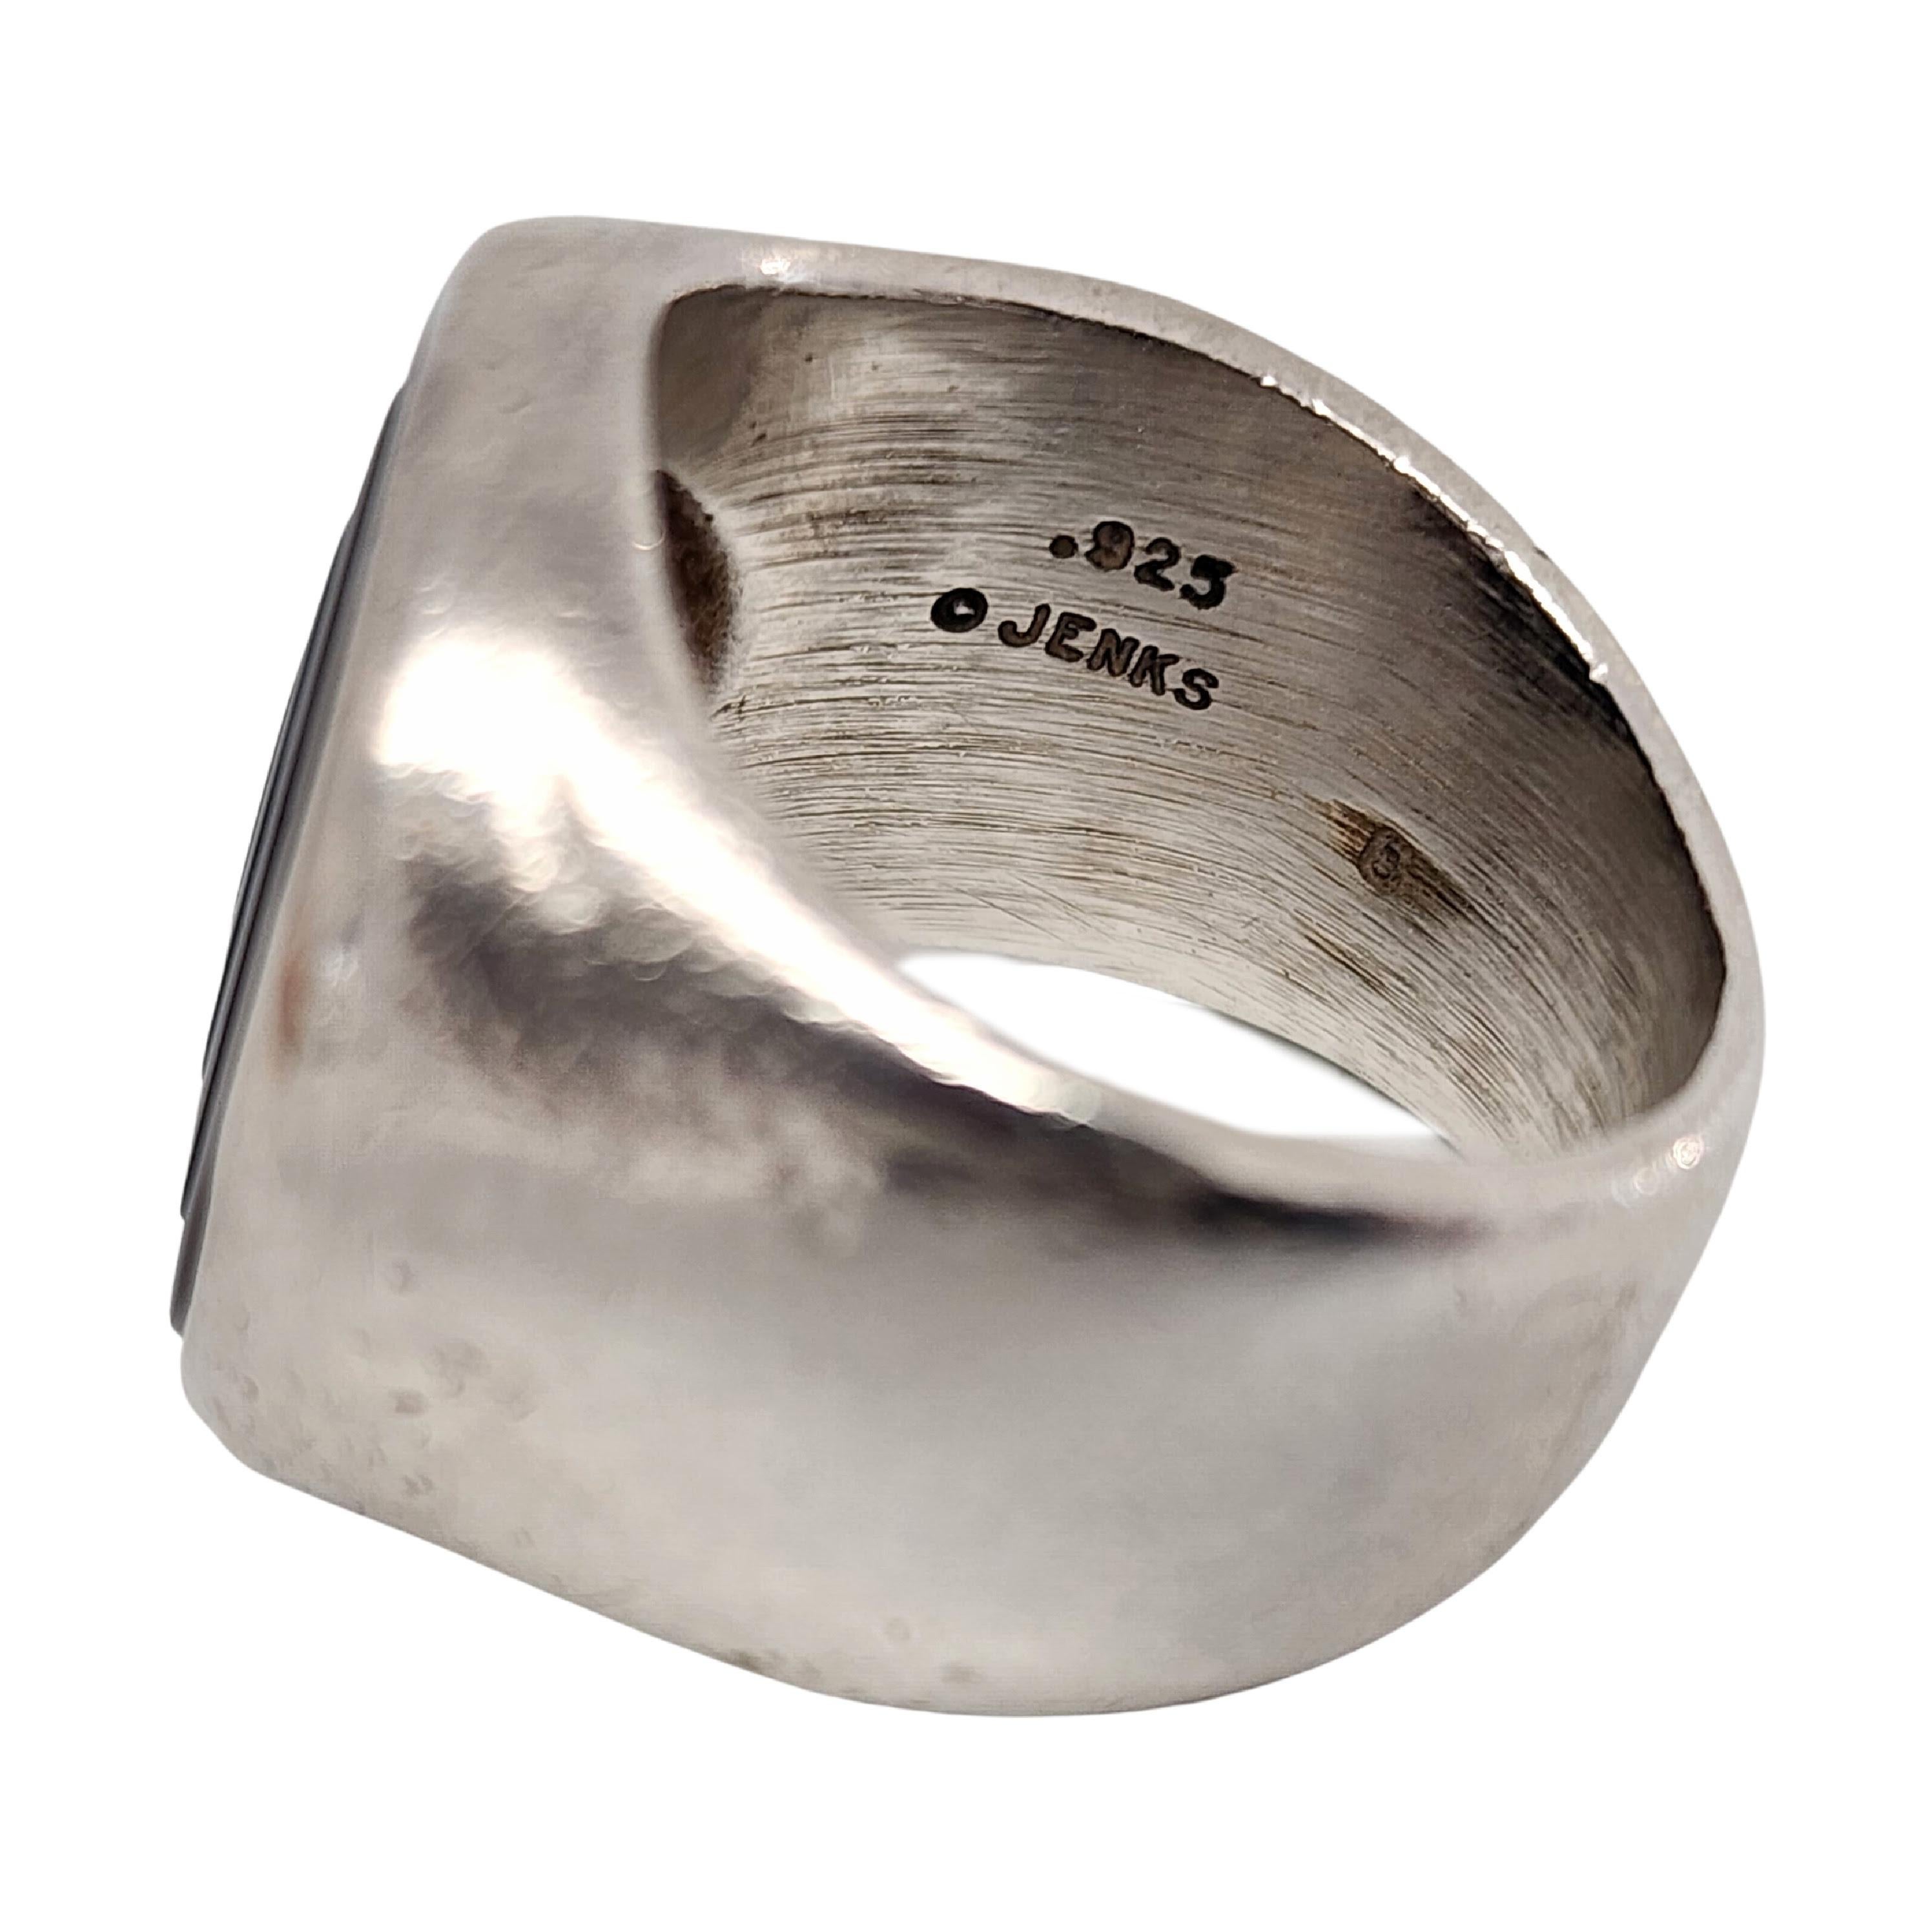 Lisa Jenks Sterling Silber Onyx Bullseye Ring, Größe 5 1/2 #14179 2